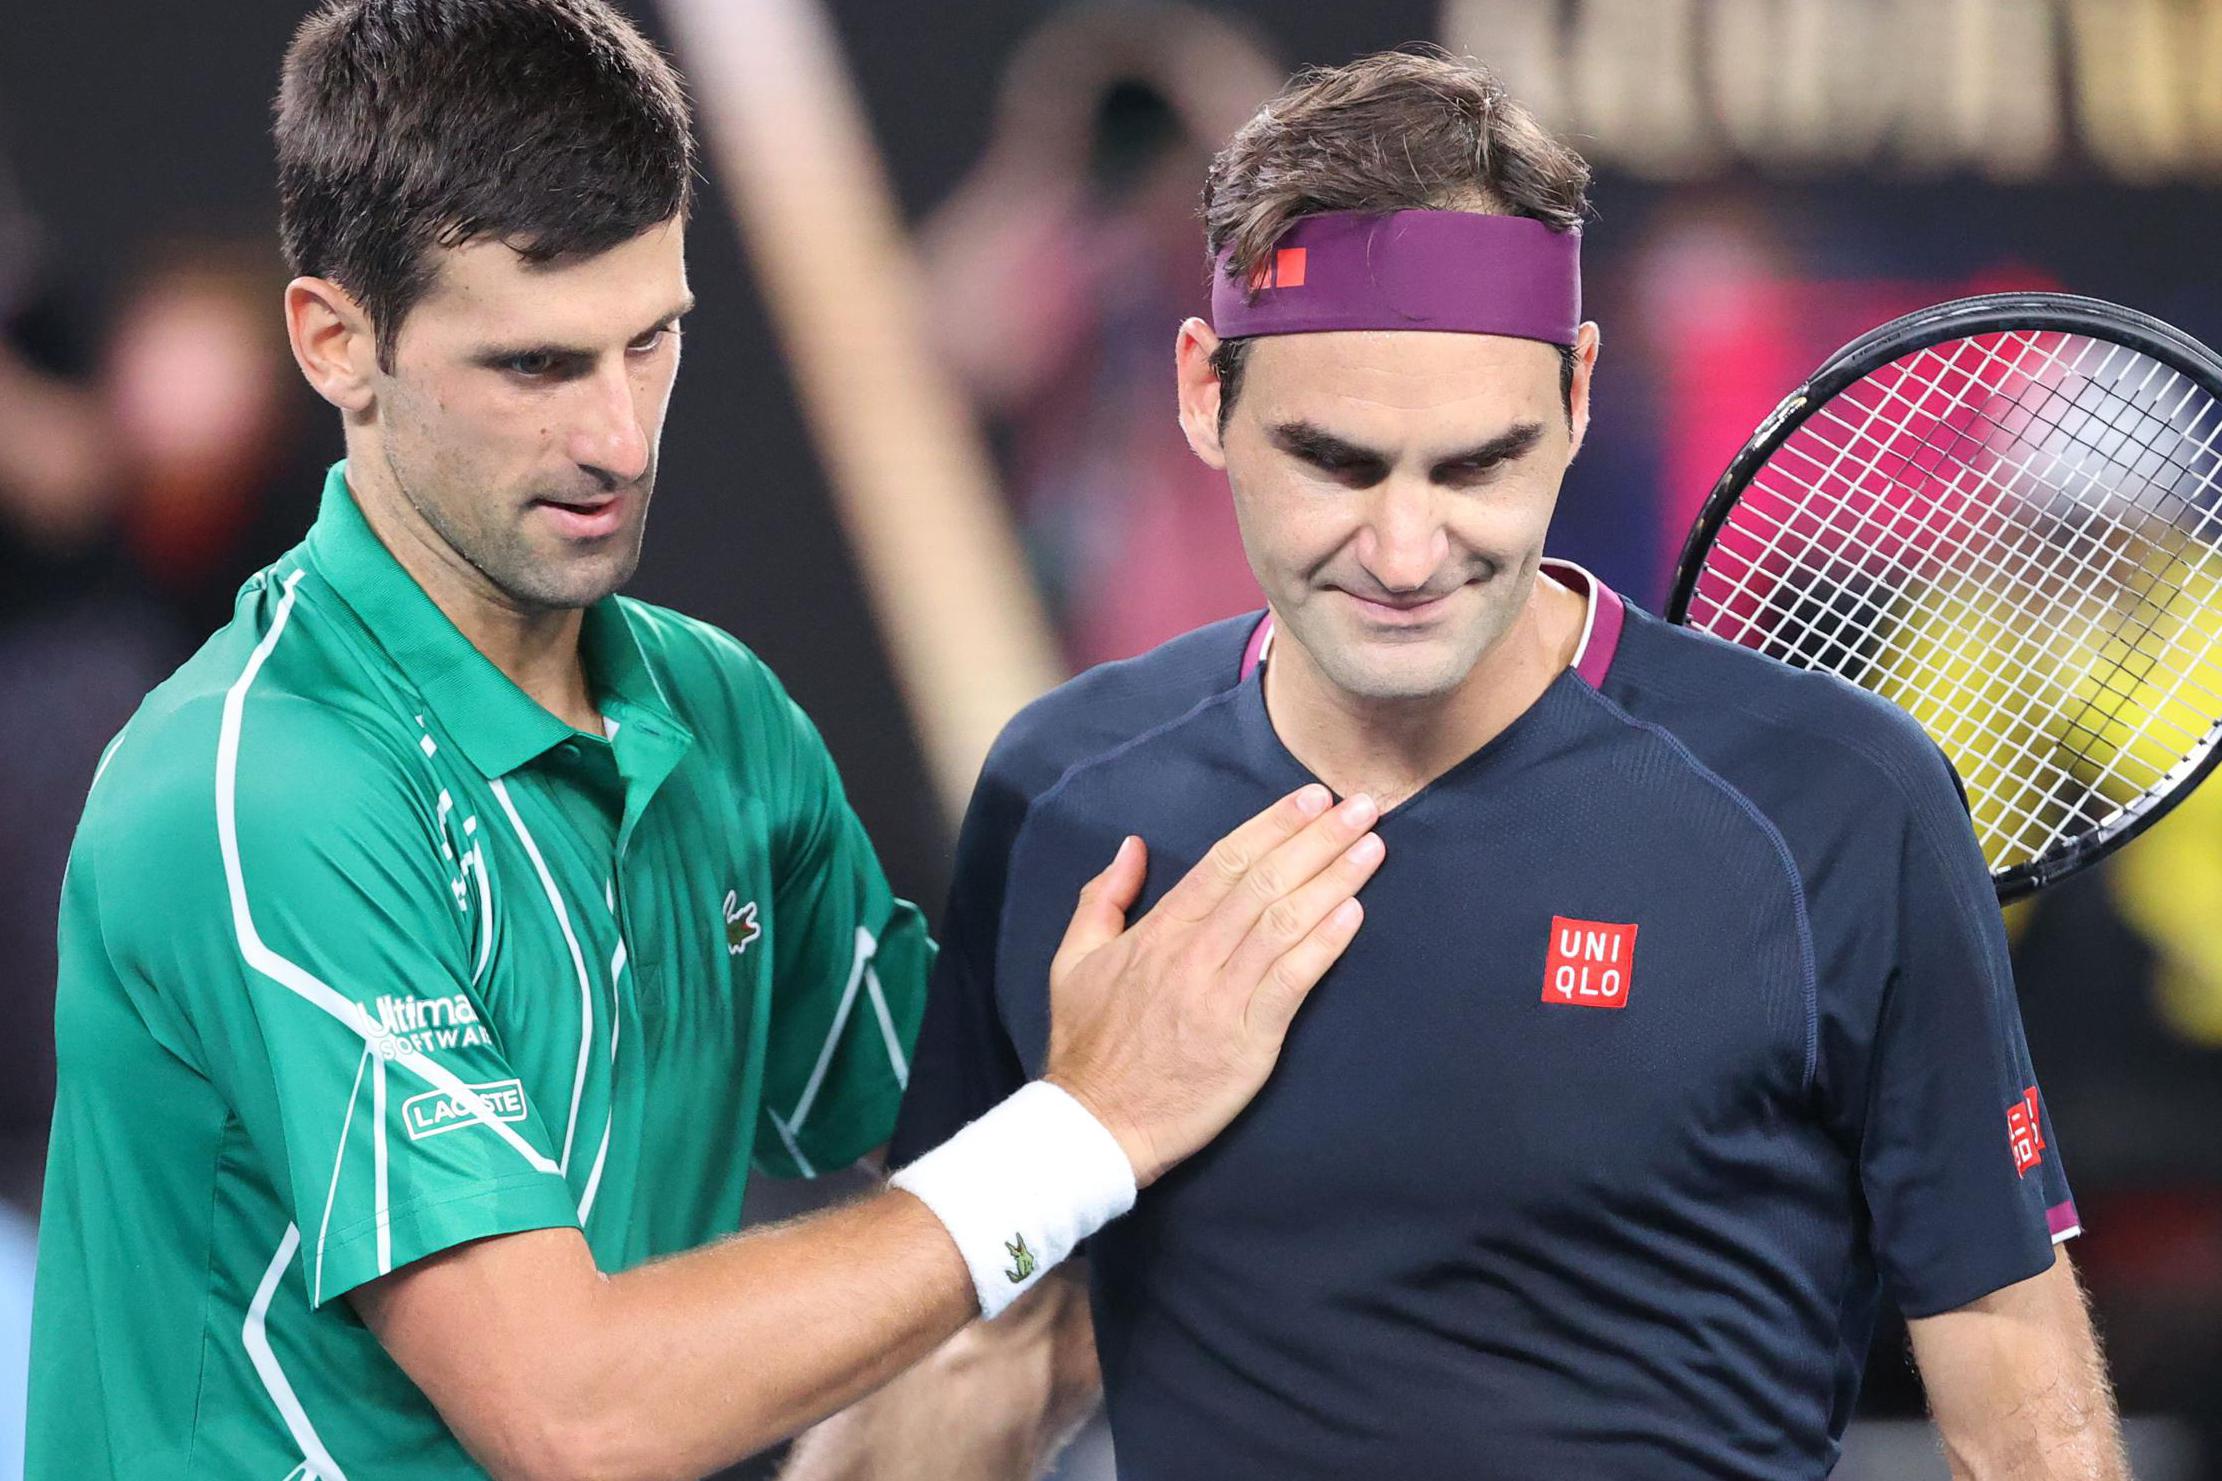 Afwijzen Wat leuk rand Roger Federer stopt met tennis maar de kassa blijft rinkelen voor RF: geen  tennisser die zoveel geld ophaalt naast het veld | Het Nieuwsblad Mobile